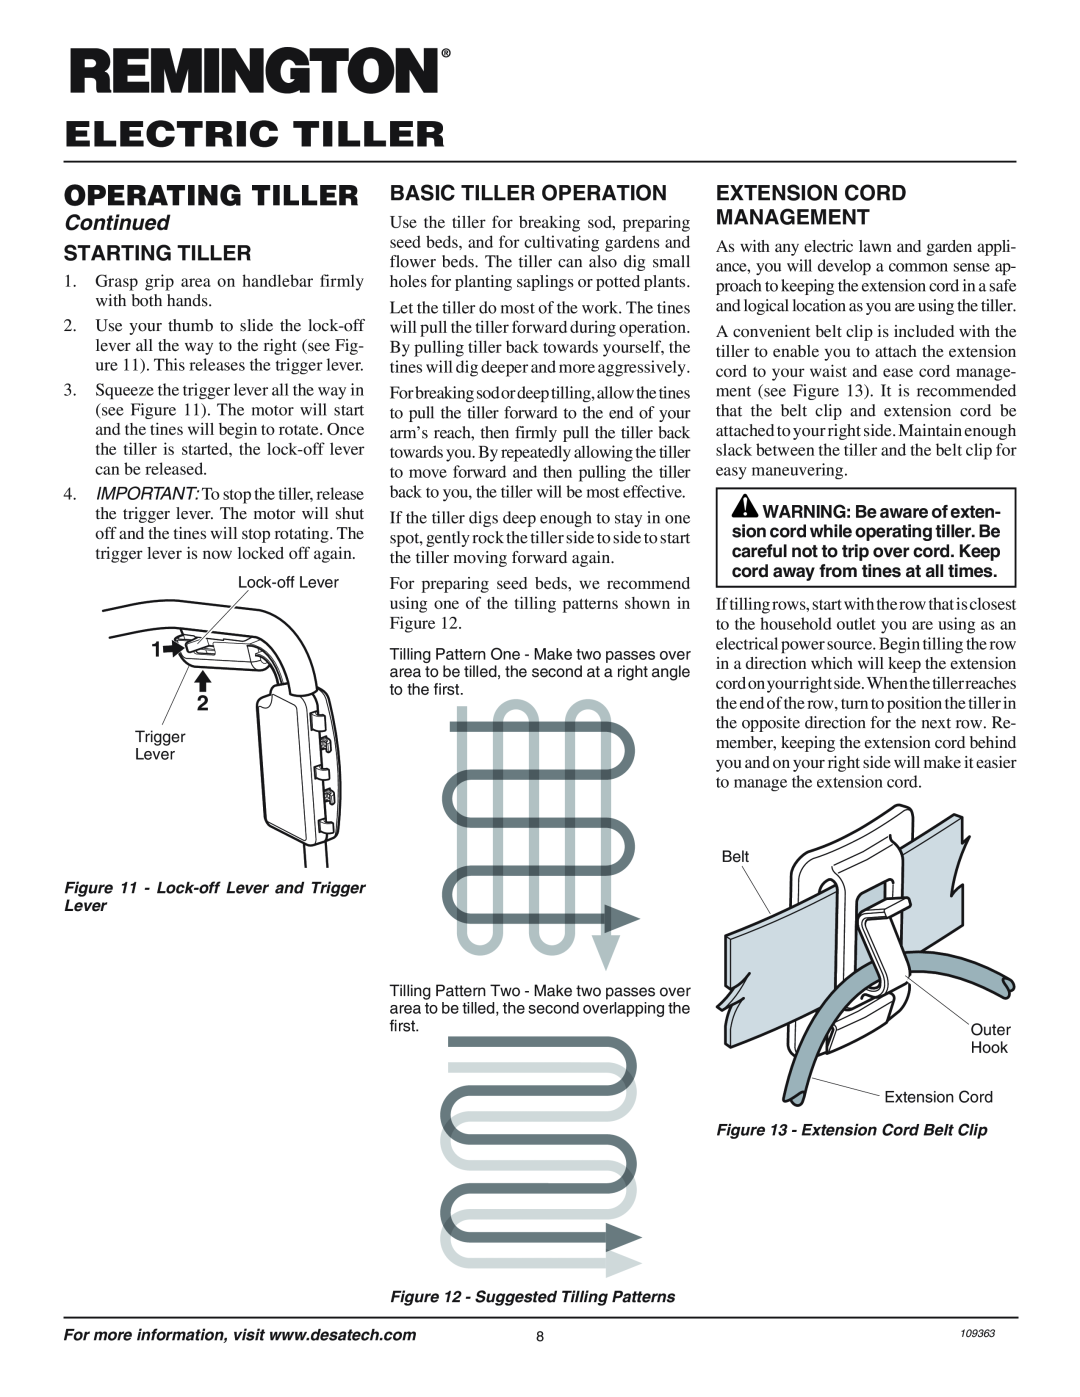 Remington 109312-01 Starting Tiller, Basic Tiller Operation, Extension Cord Management, Electric Tiller, Operating Tiller 